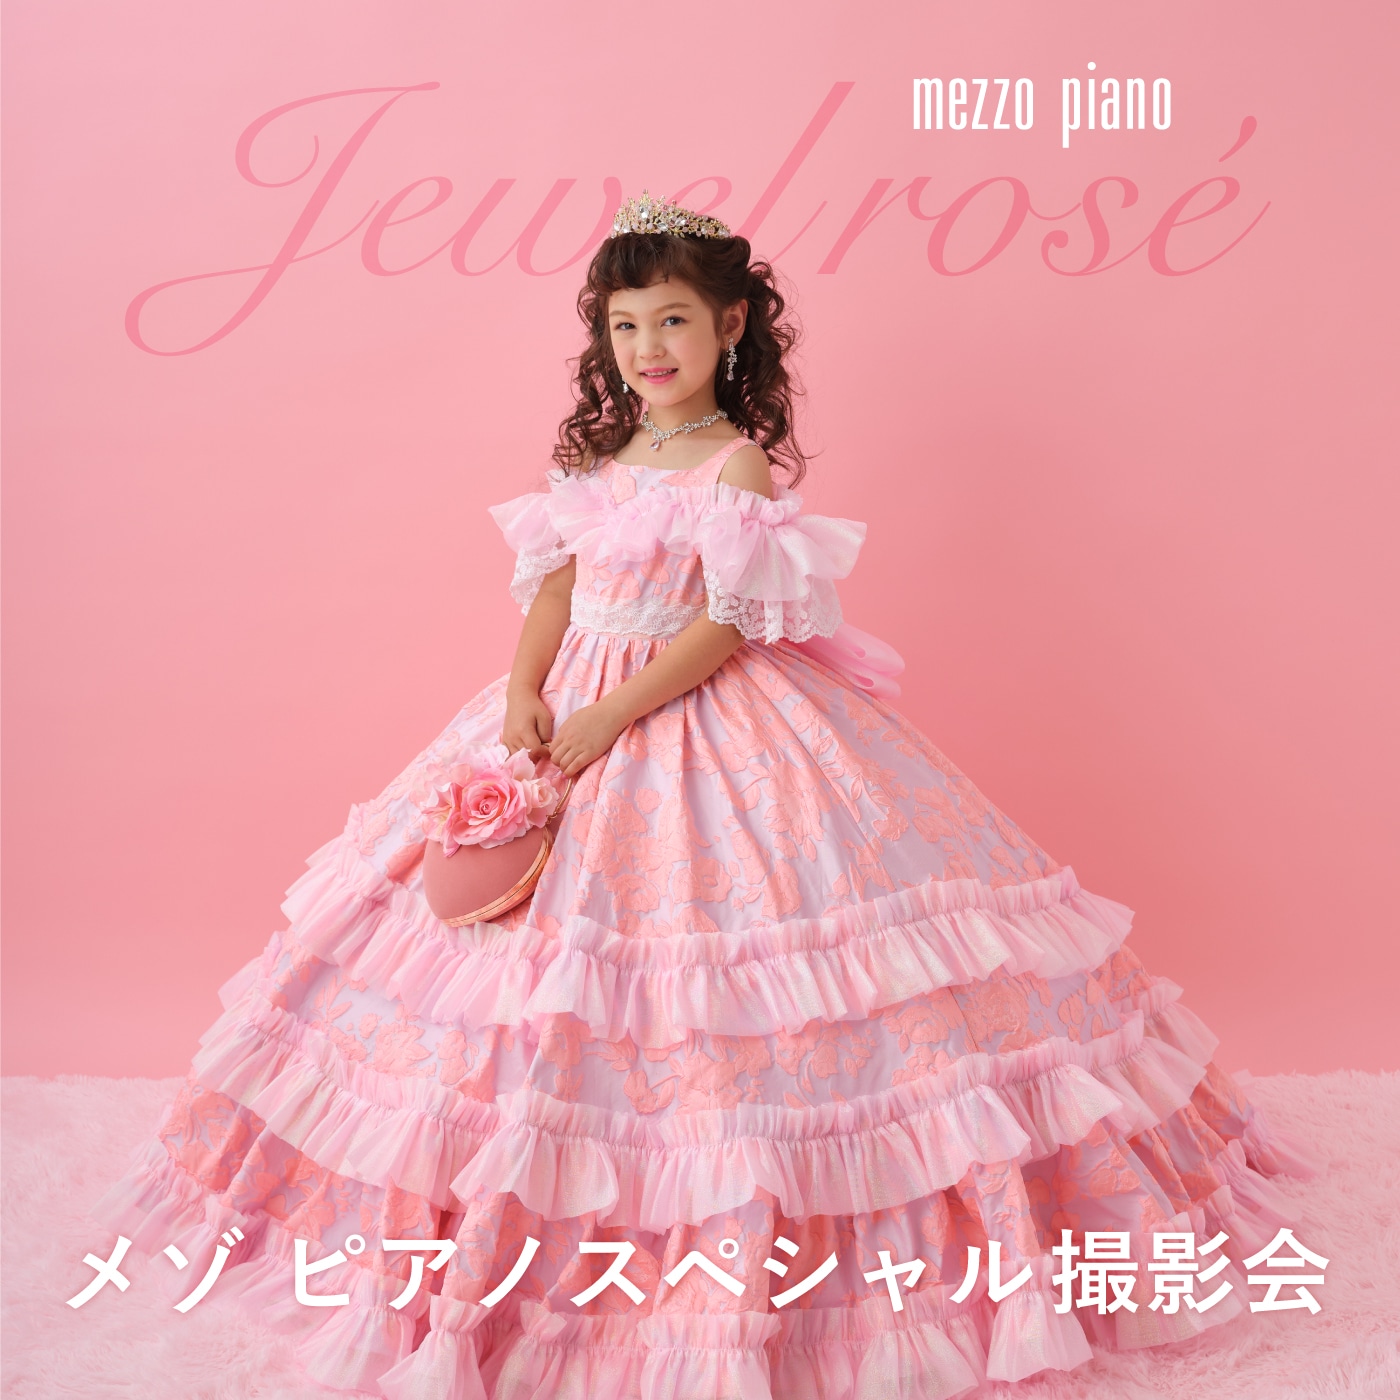 mezzo piano スペシャルドレスイベント開催　2023AW新作ドレス「Jewel rose(ジュエル ロゼ) 」登場